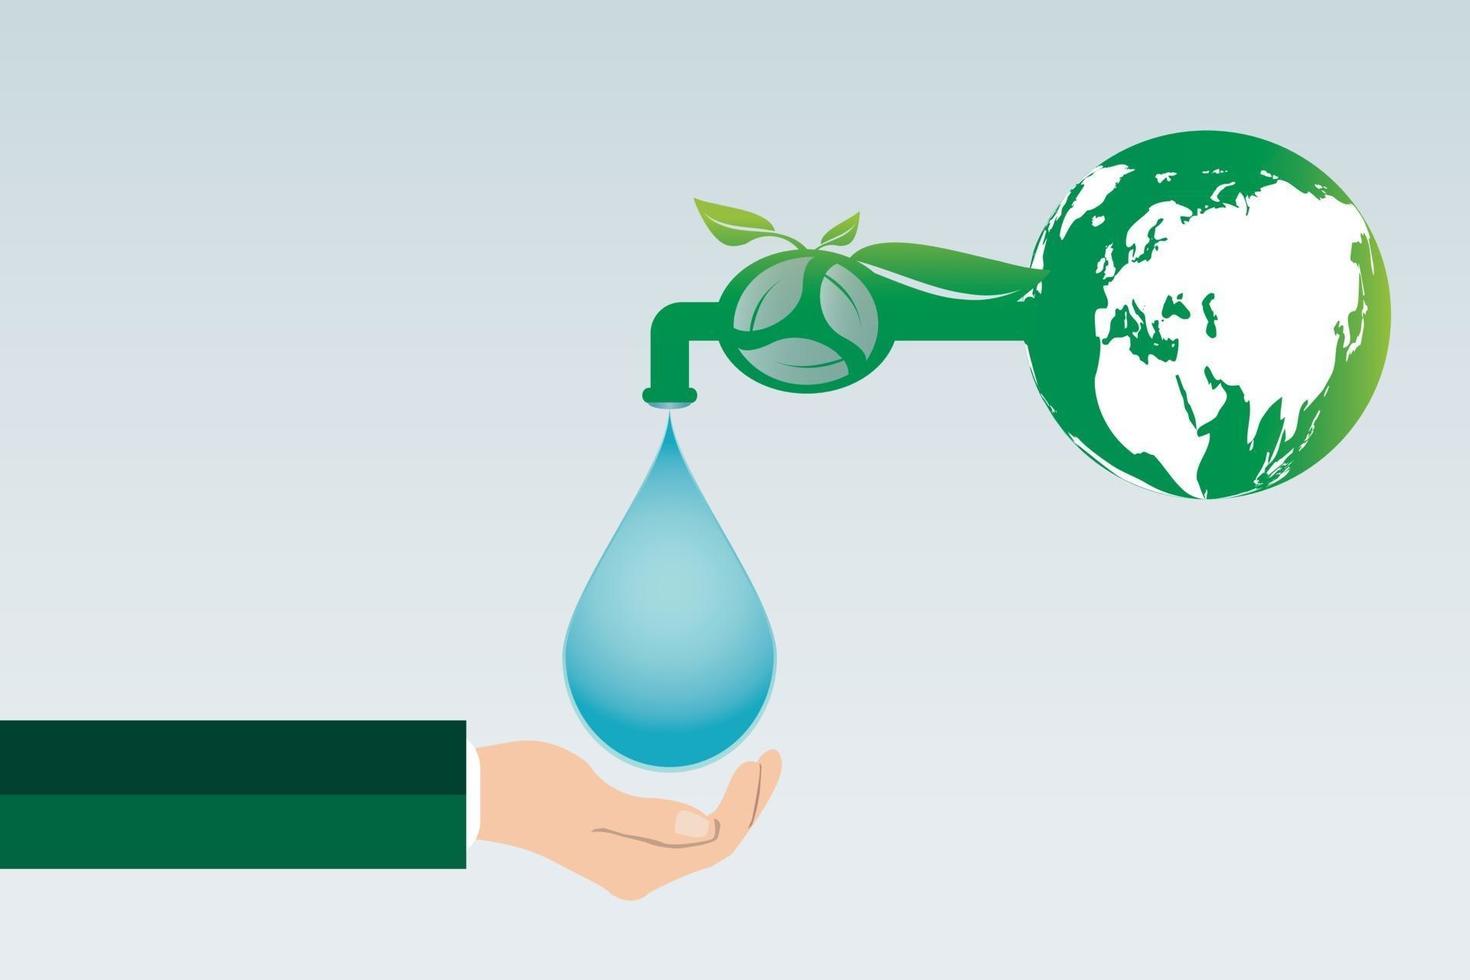 ecología ahorrar agua energía limpia reciclar y sostener ciudades verdes ayudan al mundo con ideas conceptuales ecológicas vector